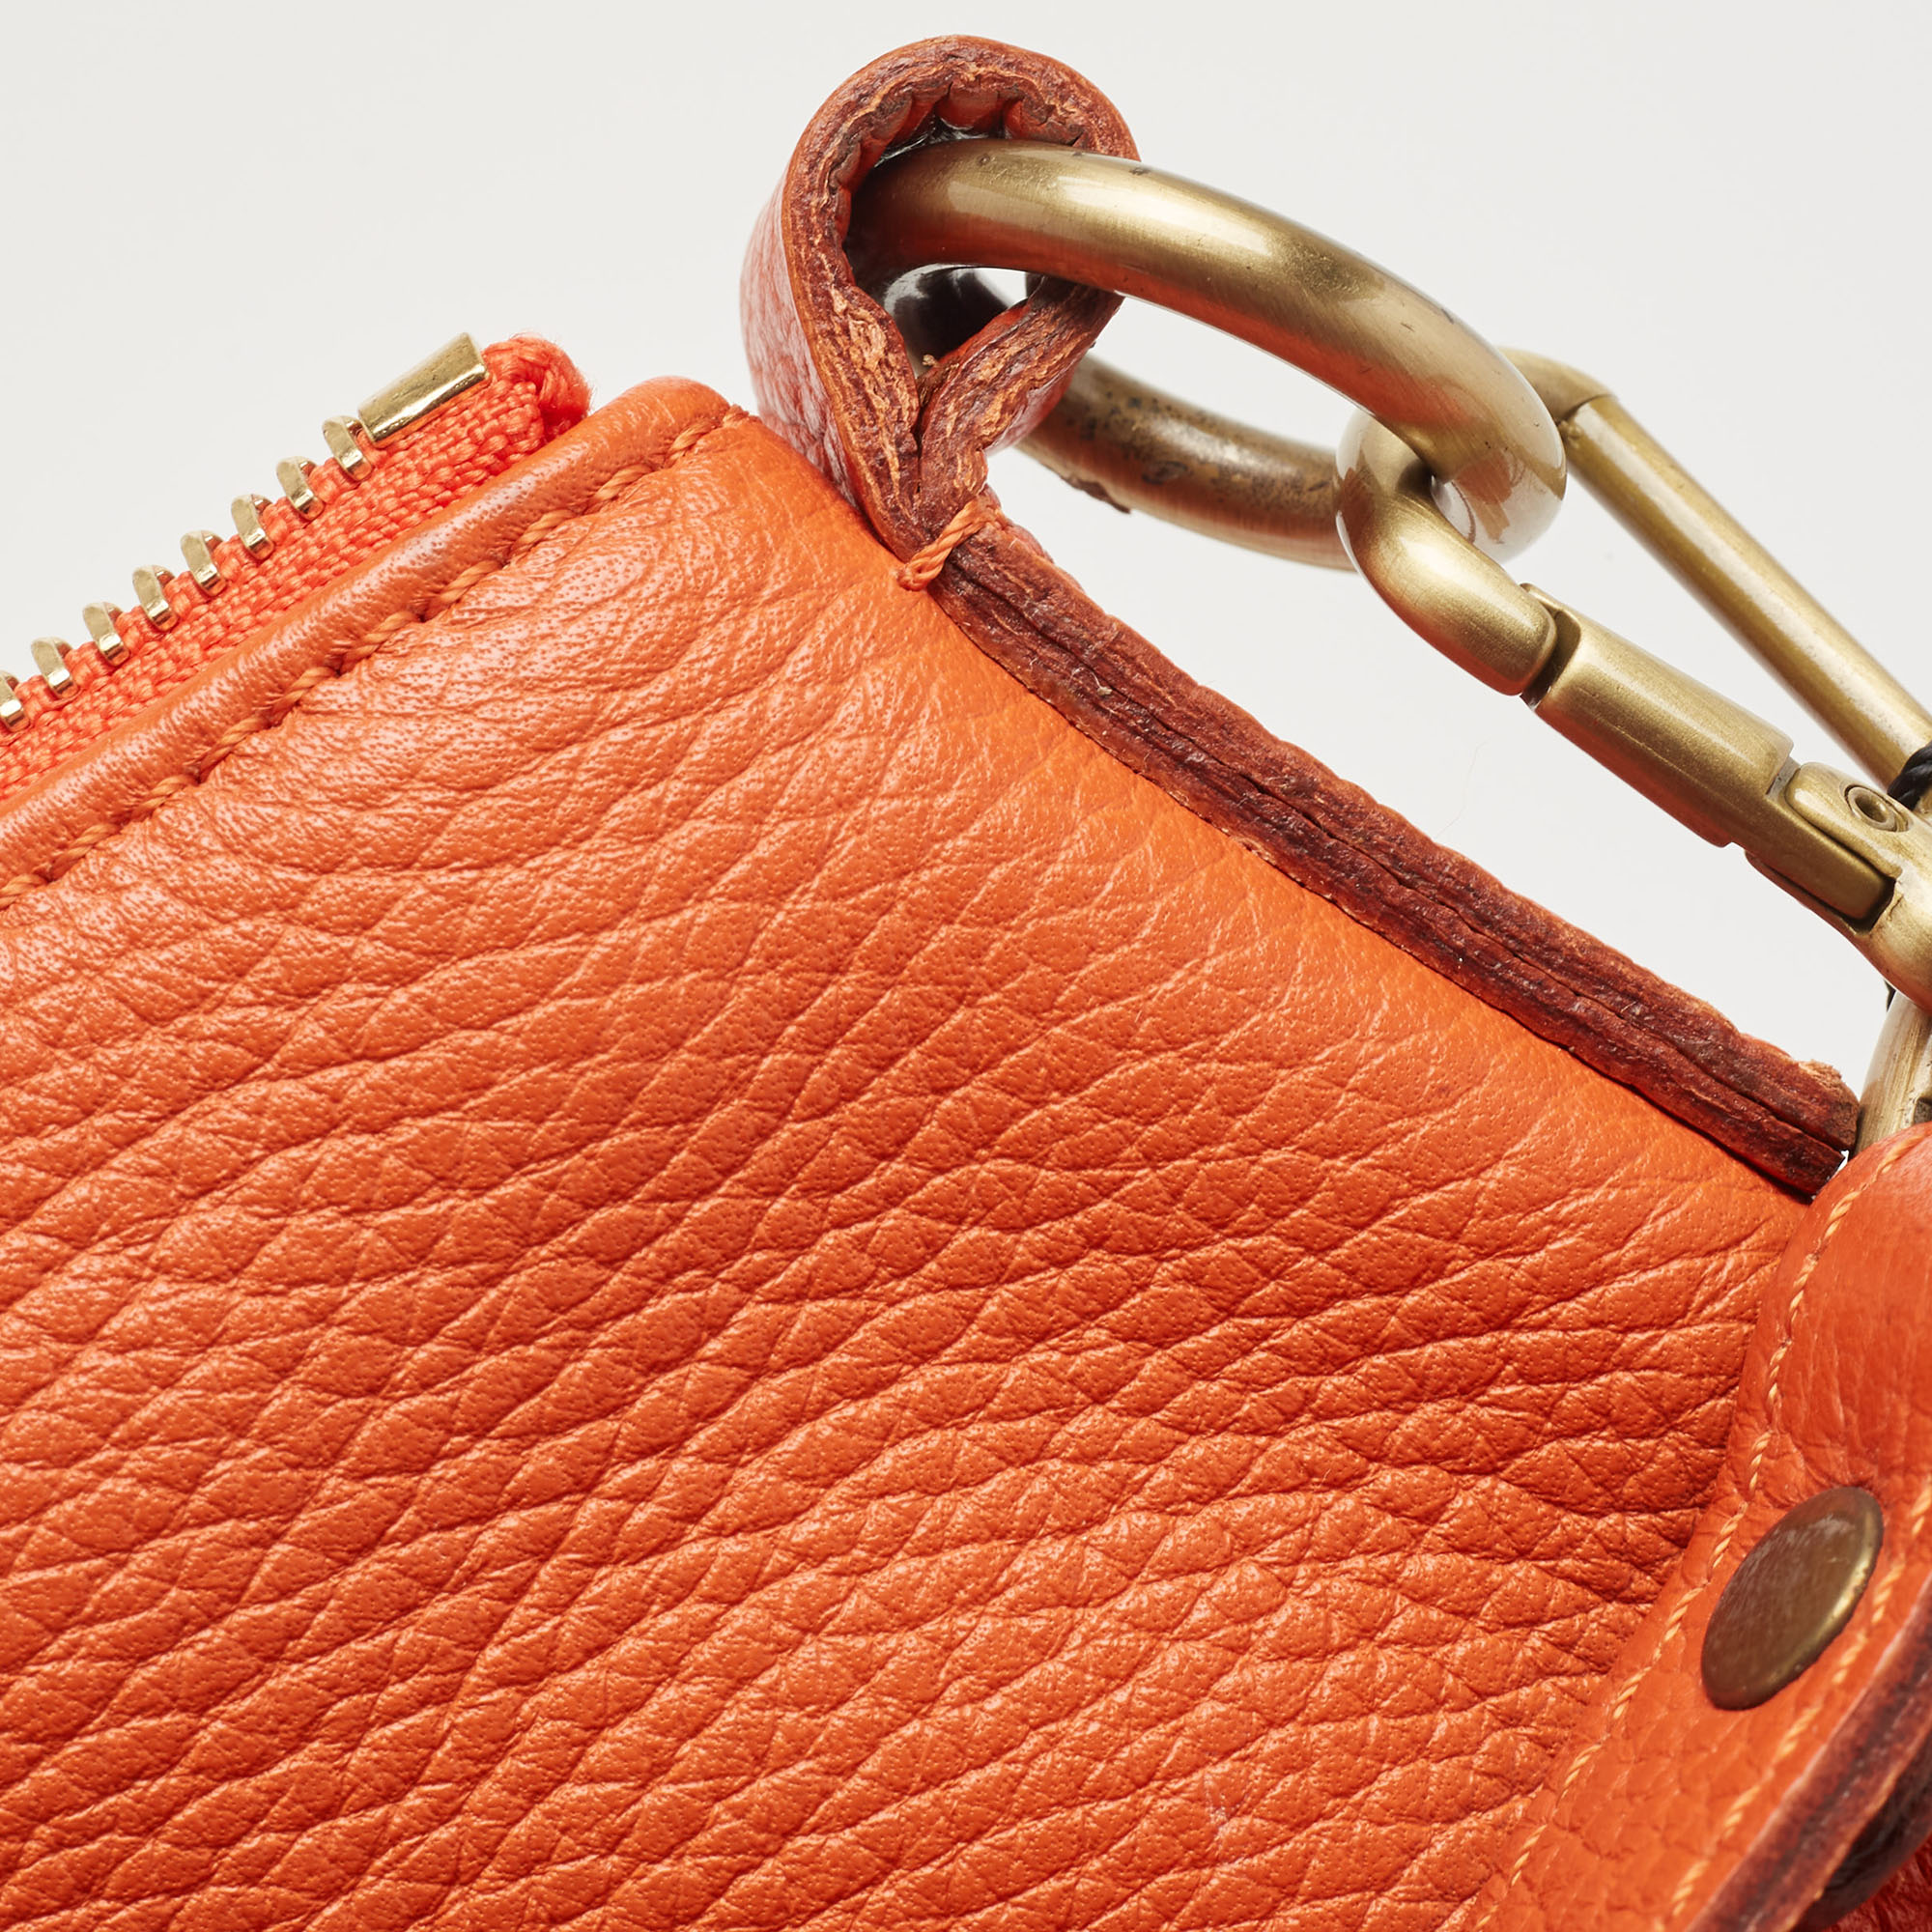 Burberry Orange Leather Shoulder Bag